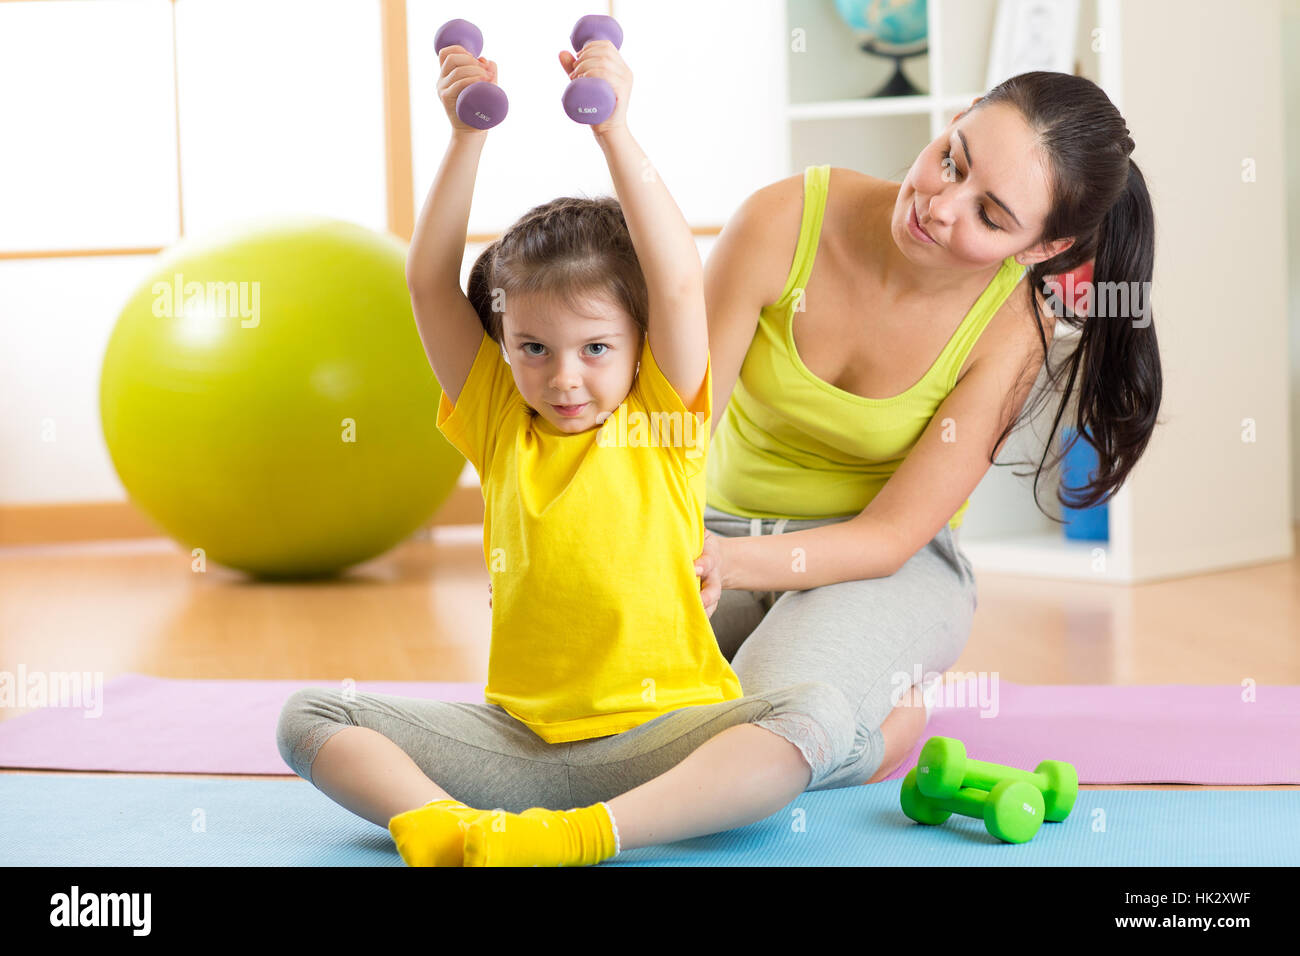 La famille de la mère et enfant fille sont engagés dans fitness, yoga, l'exercice à la maison ou salle de sport Banque D'Images